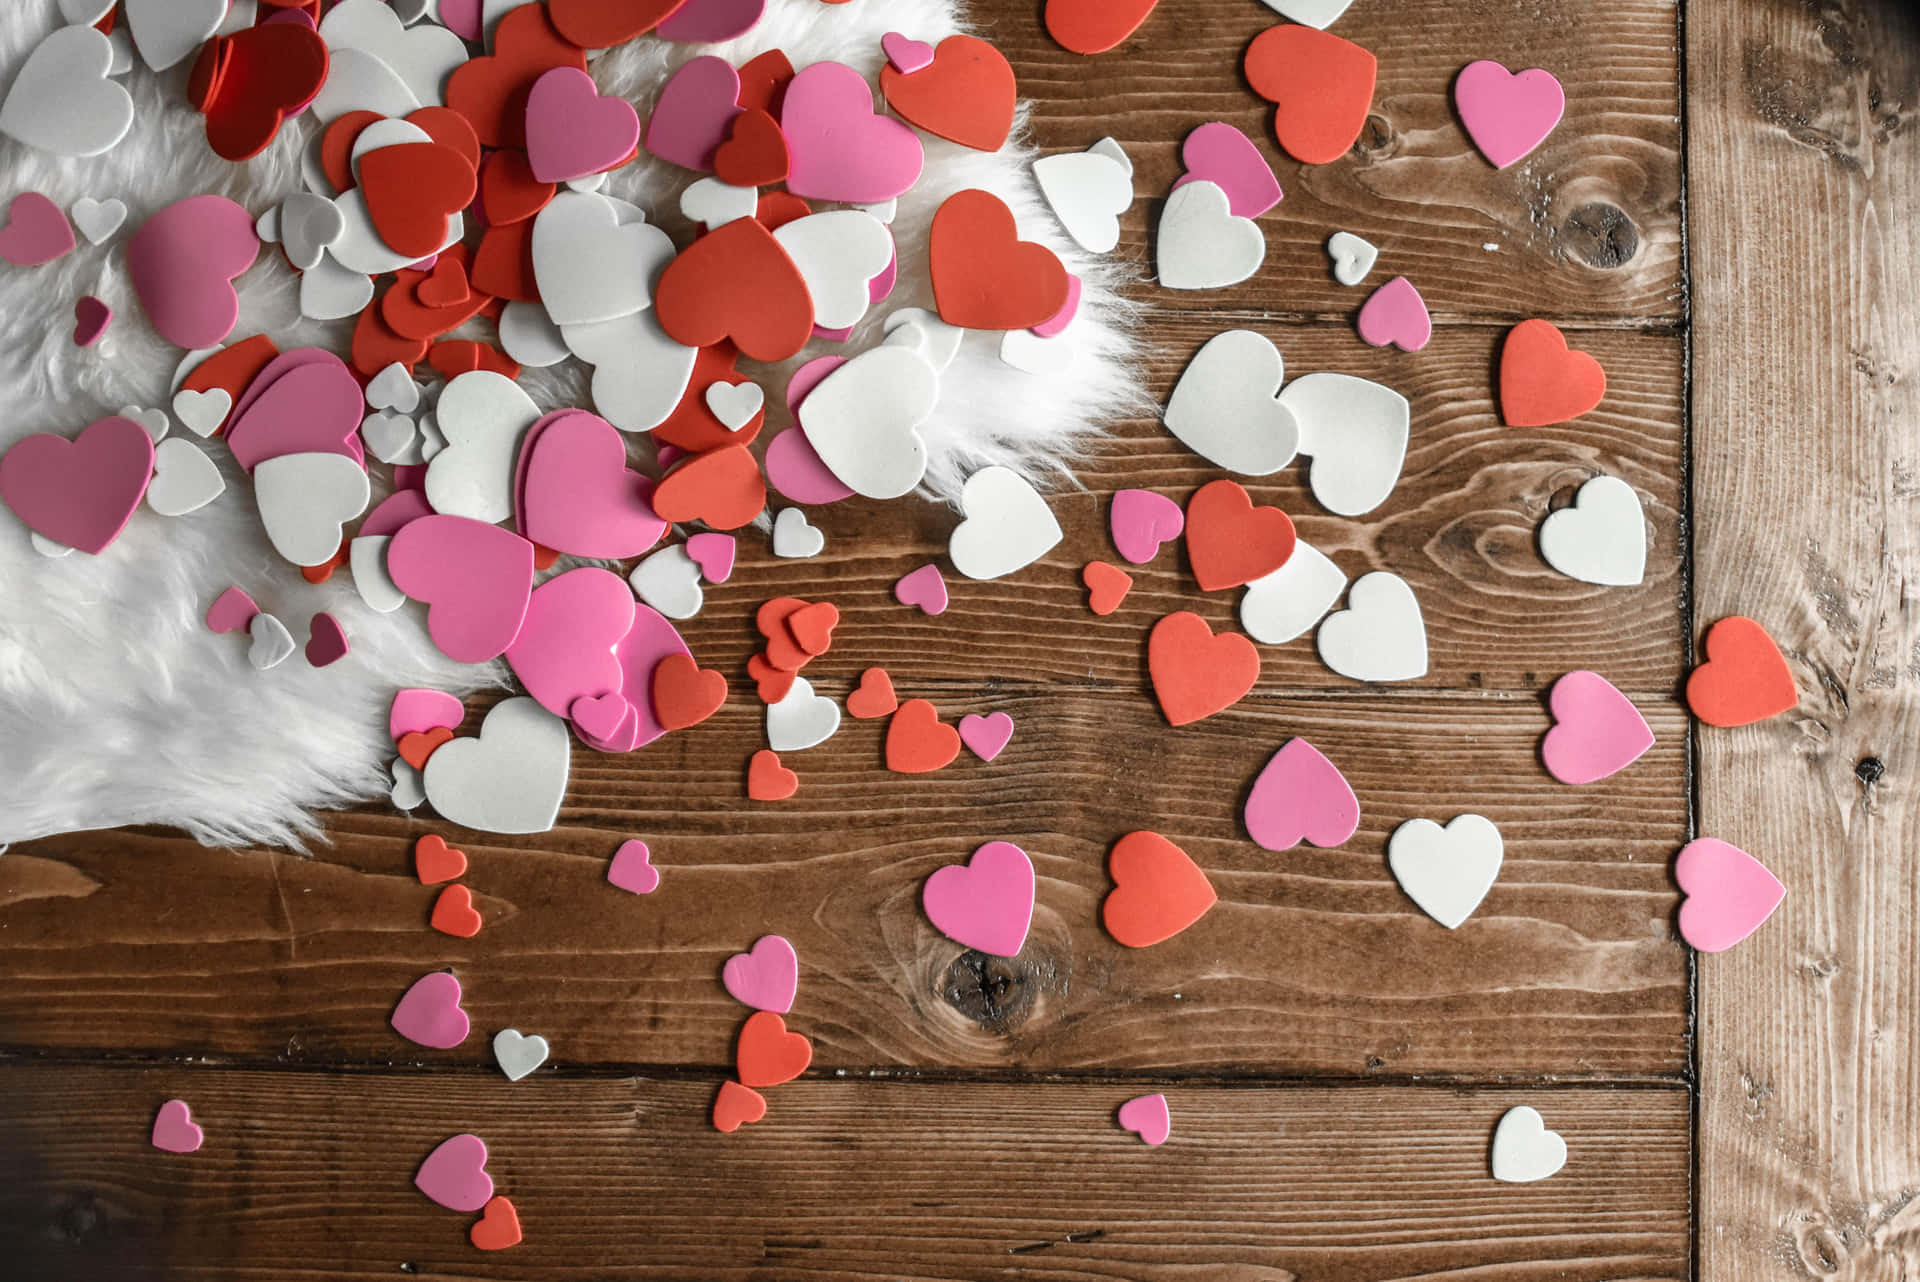 [100+] Fondos de fotos de Día de San Valentín rústico | Wallpapers.com